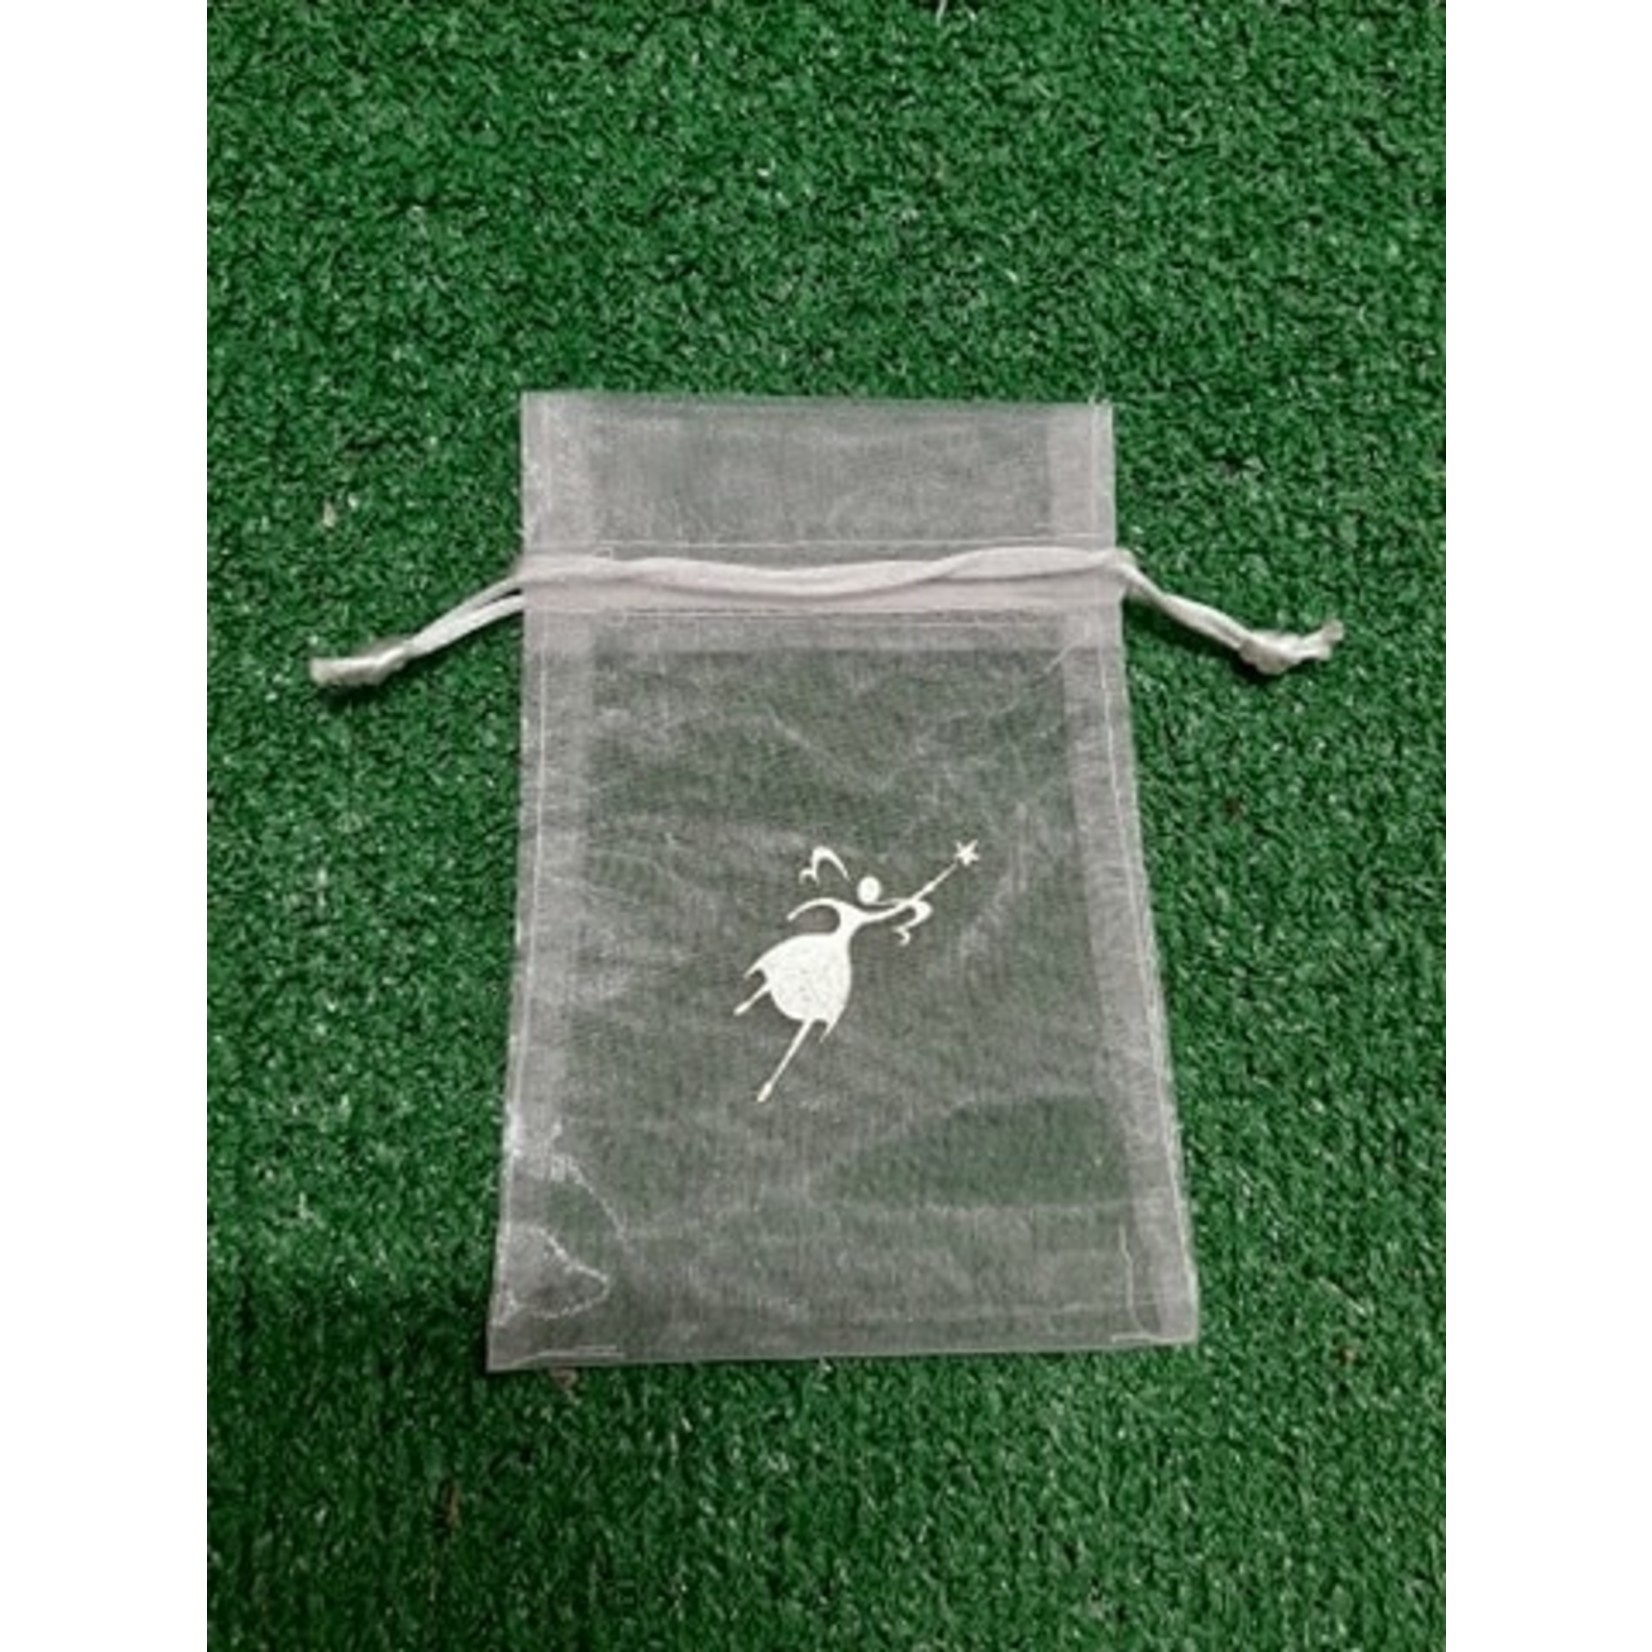 Fairy Goodies Organza Gift Bag